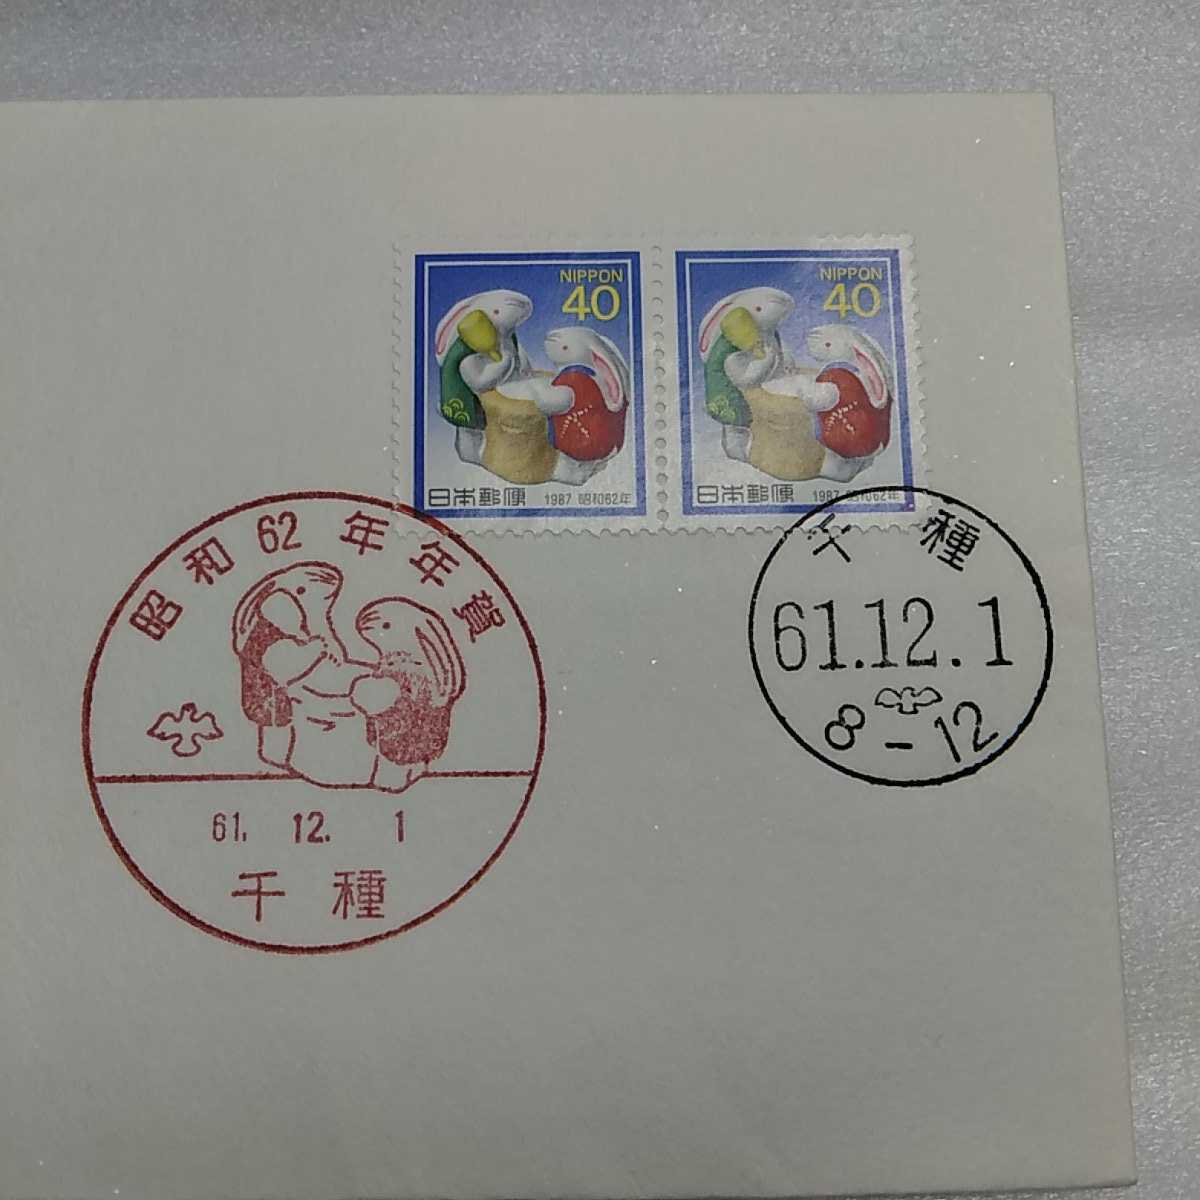 6　... день крышка 　First day Cover1000 вид   почта  　 Сёва 62 год  год ... почта  марка  　40  йен  марка  　1987 год  год ... марка  